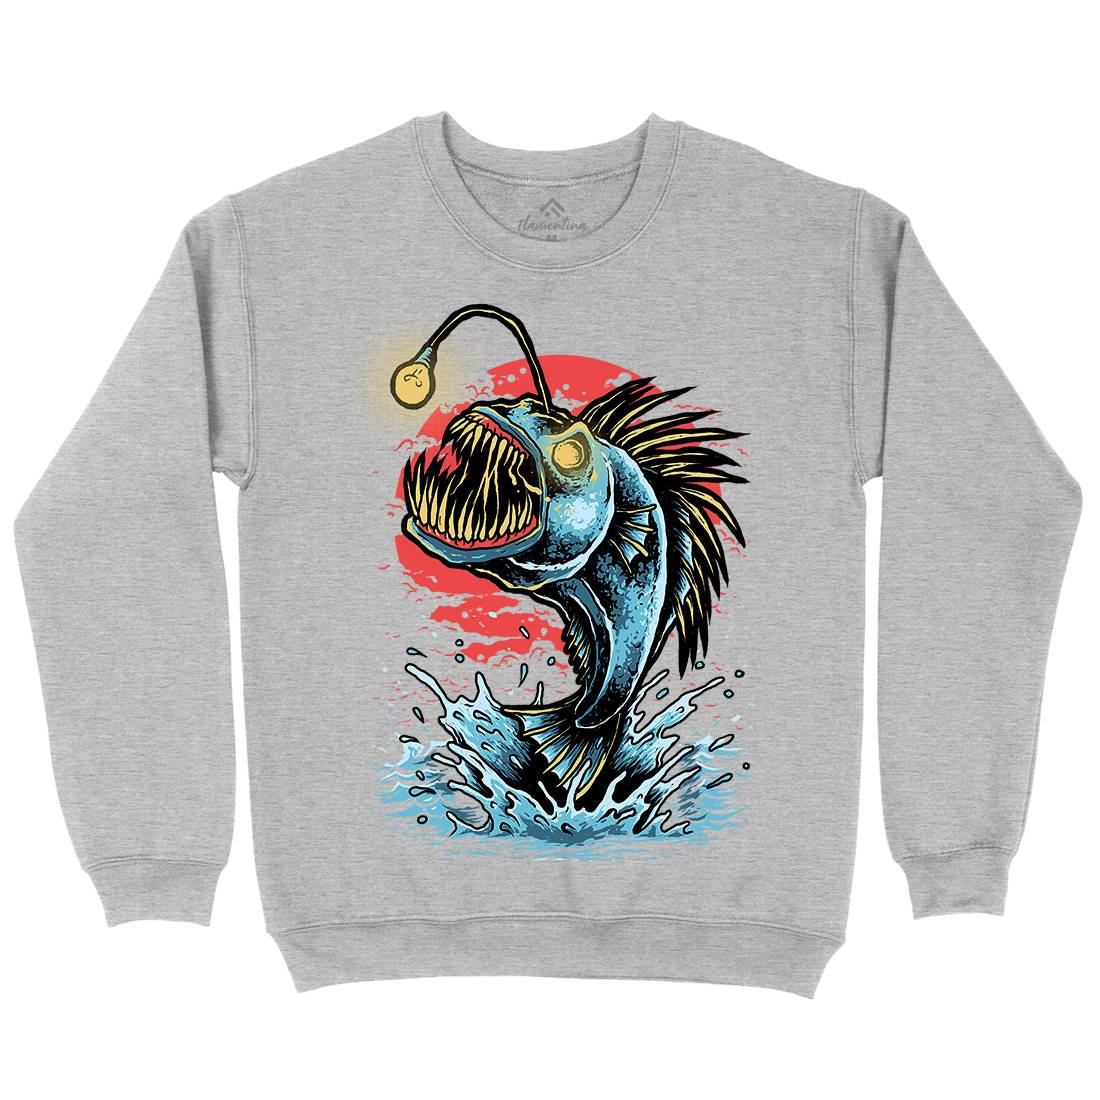 Fish Monster Mens Crew Neck Sweatshirt Horror D031